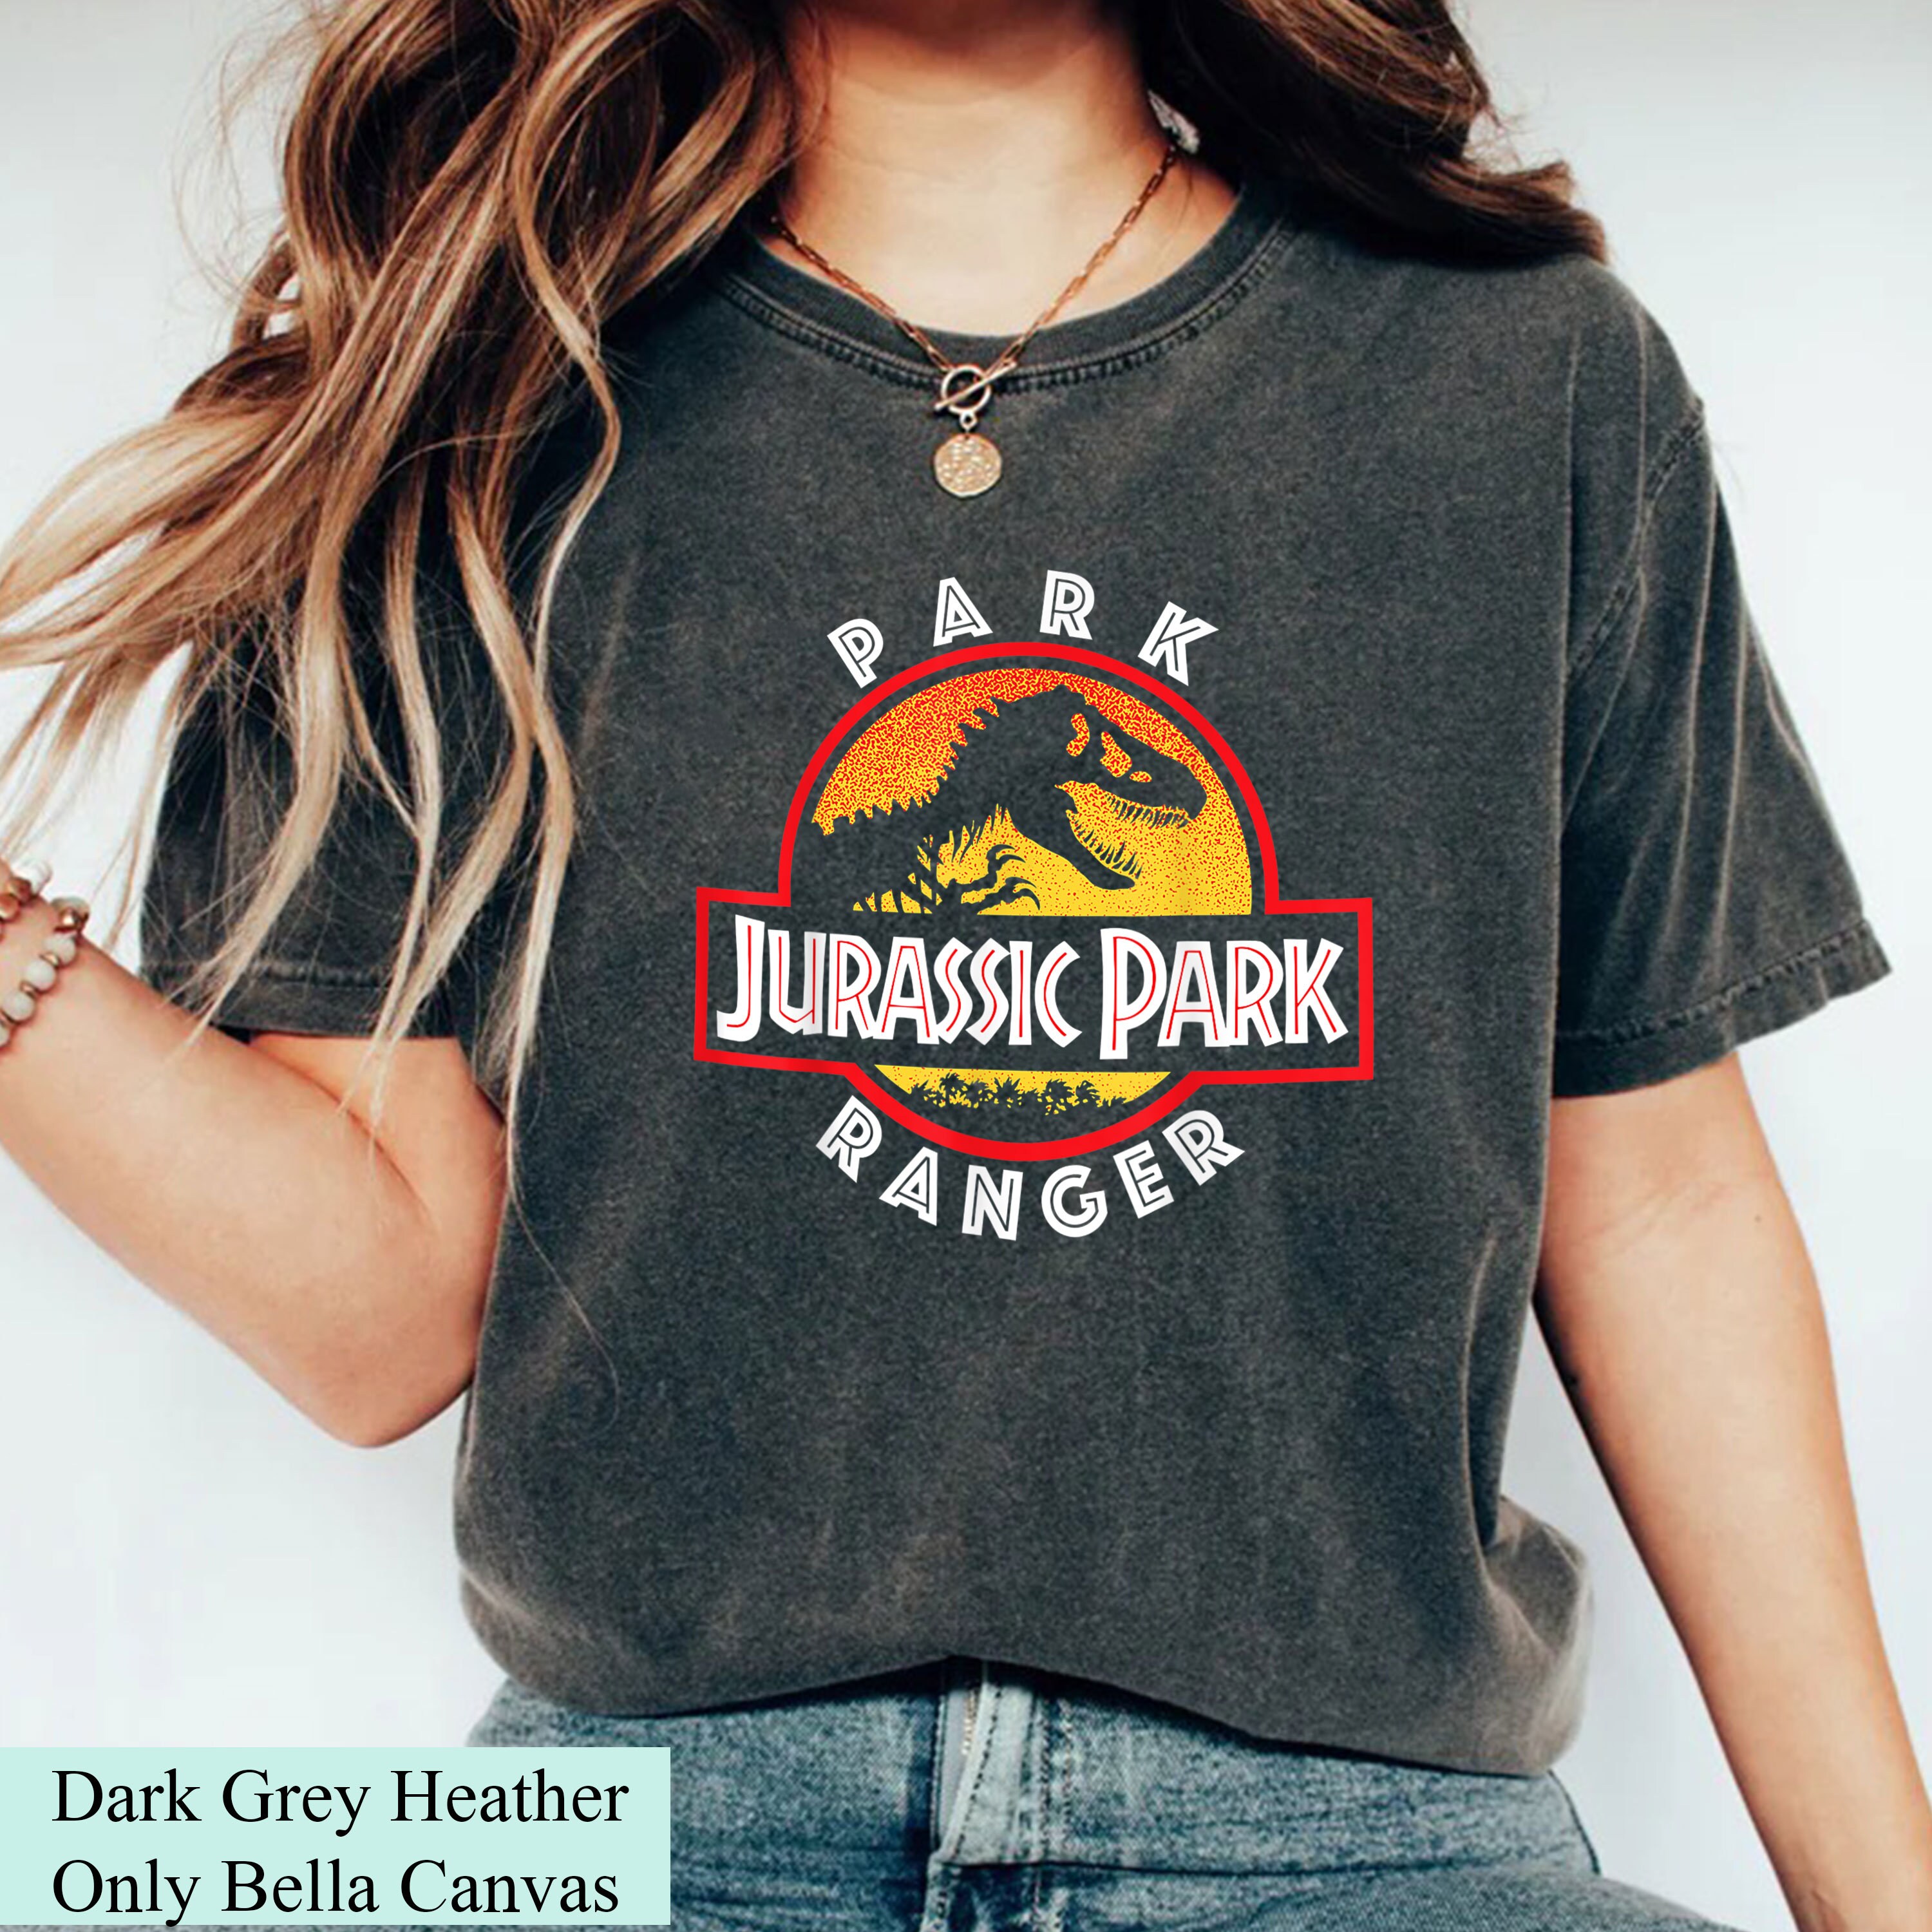  Jurassic Park - Disfraz de Dr. Ellie Sattler para adultos,  talla XS : Ropa, Zapatos y Joyería